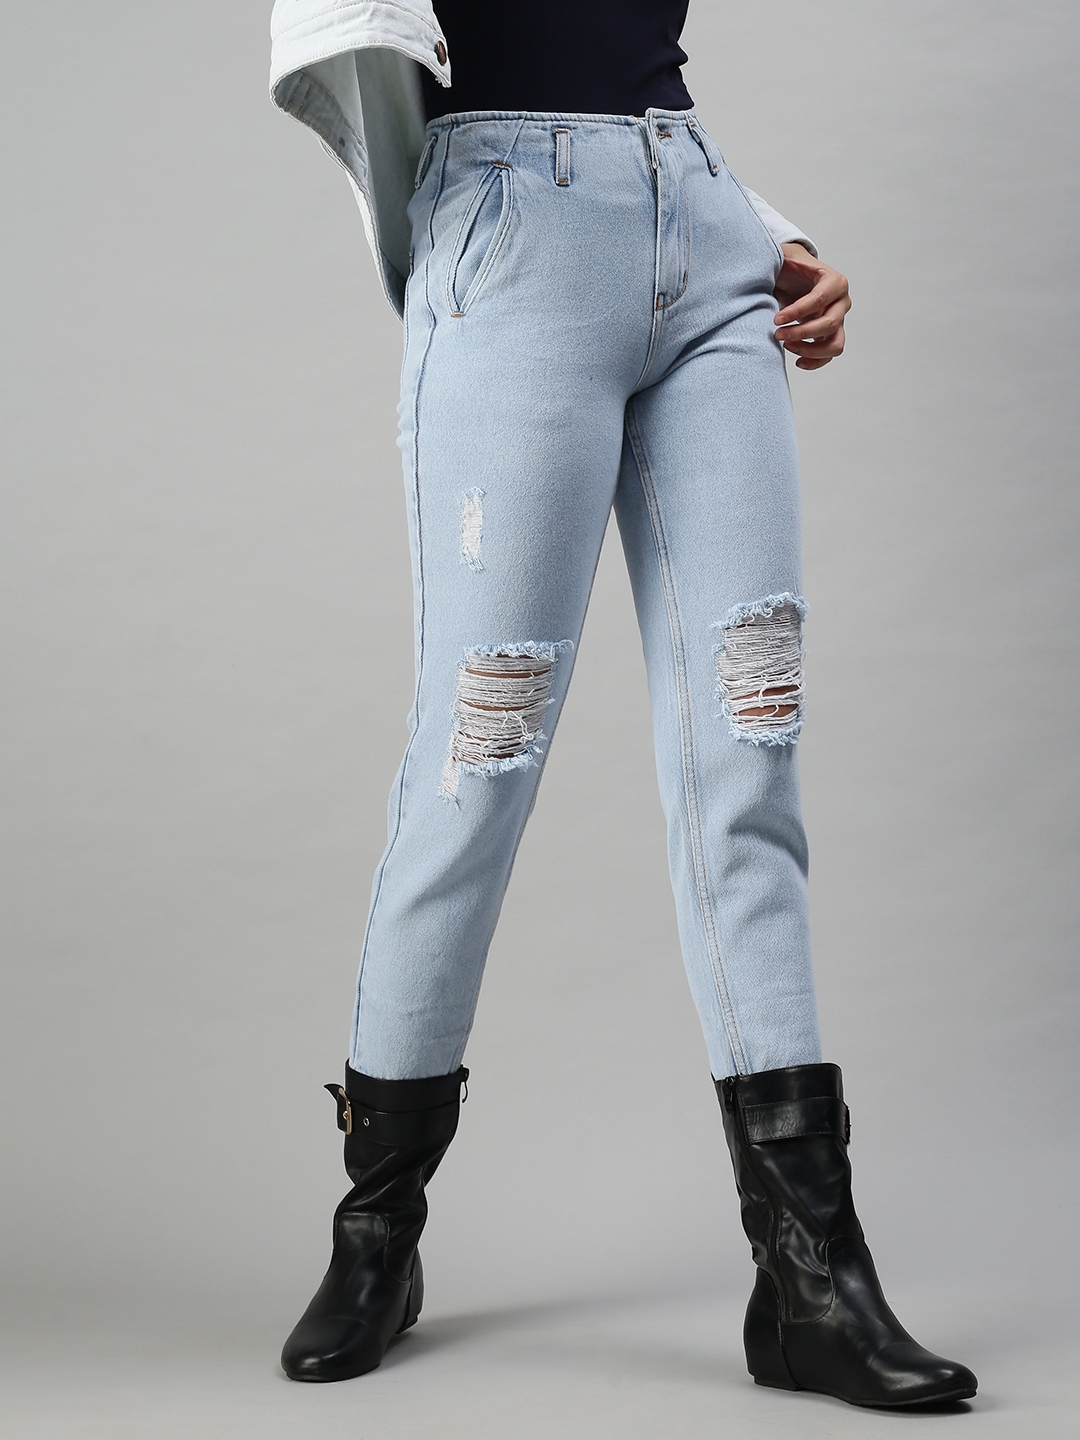 Women's Blue Denim Ripped Jeans